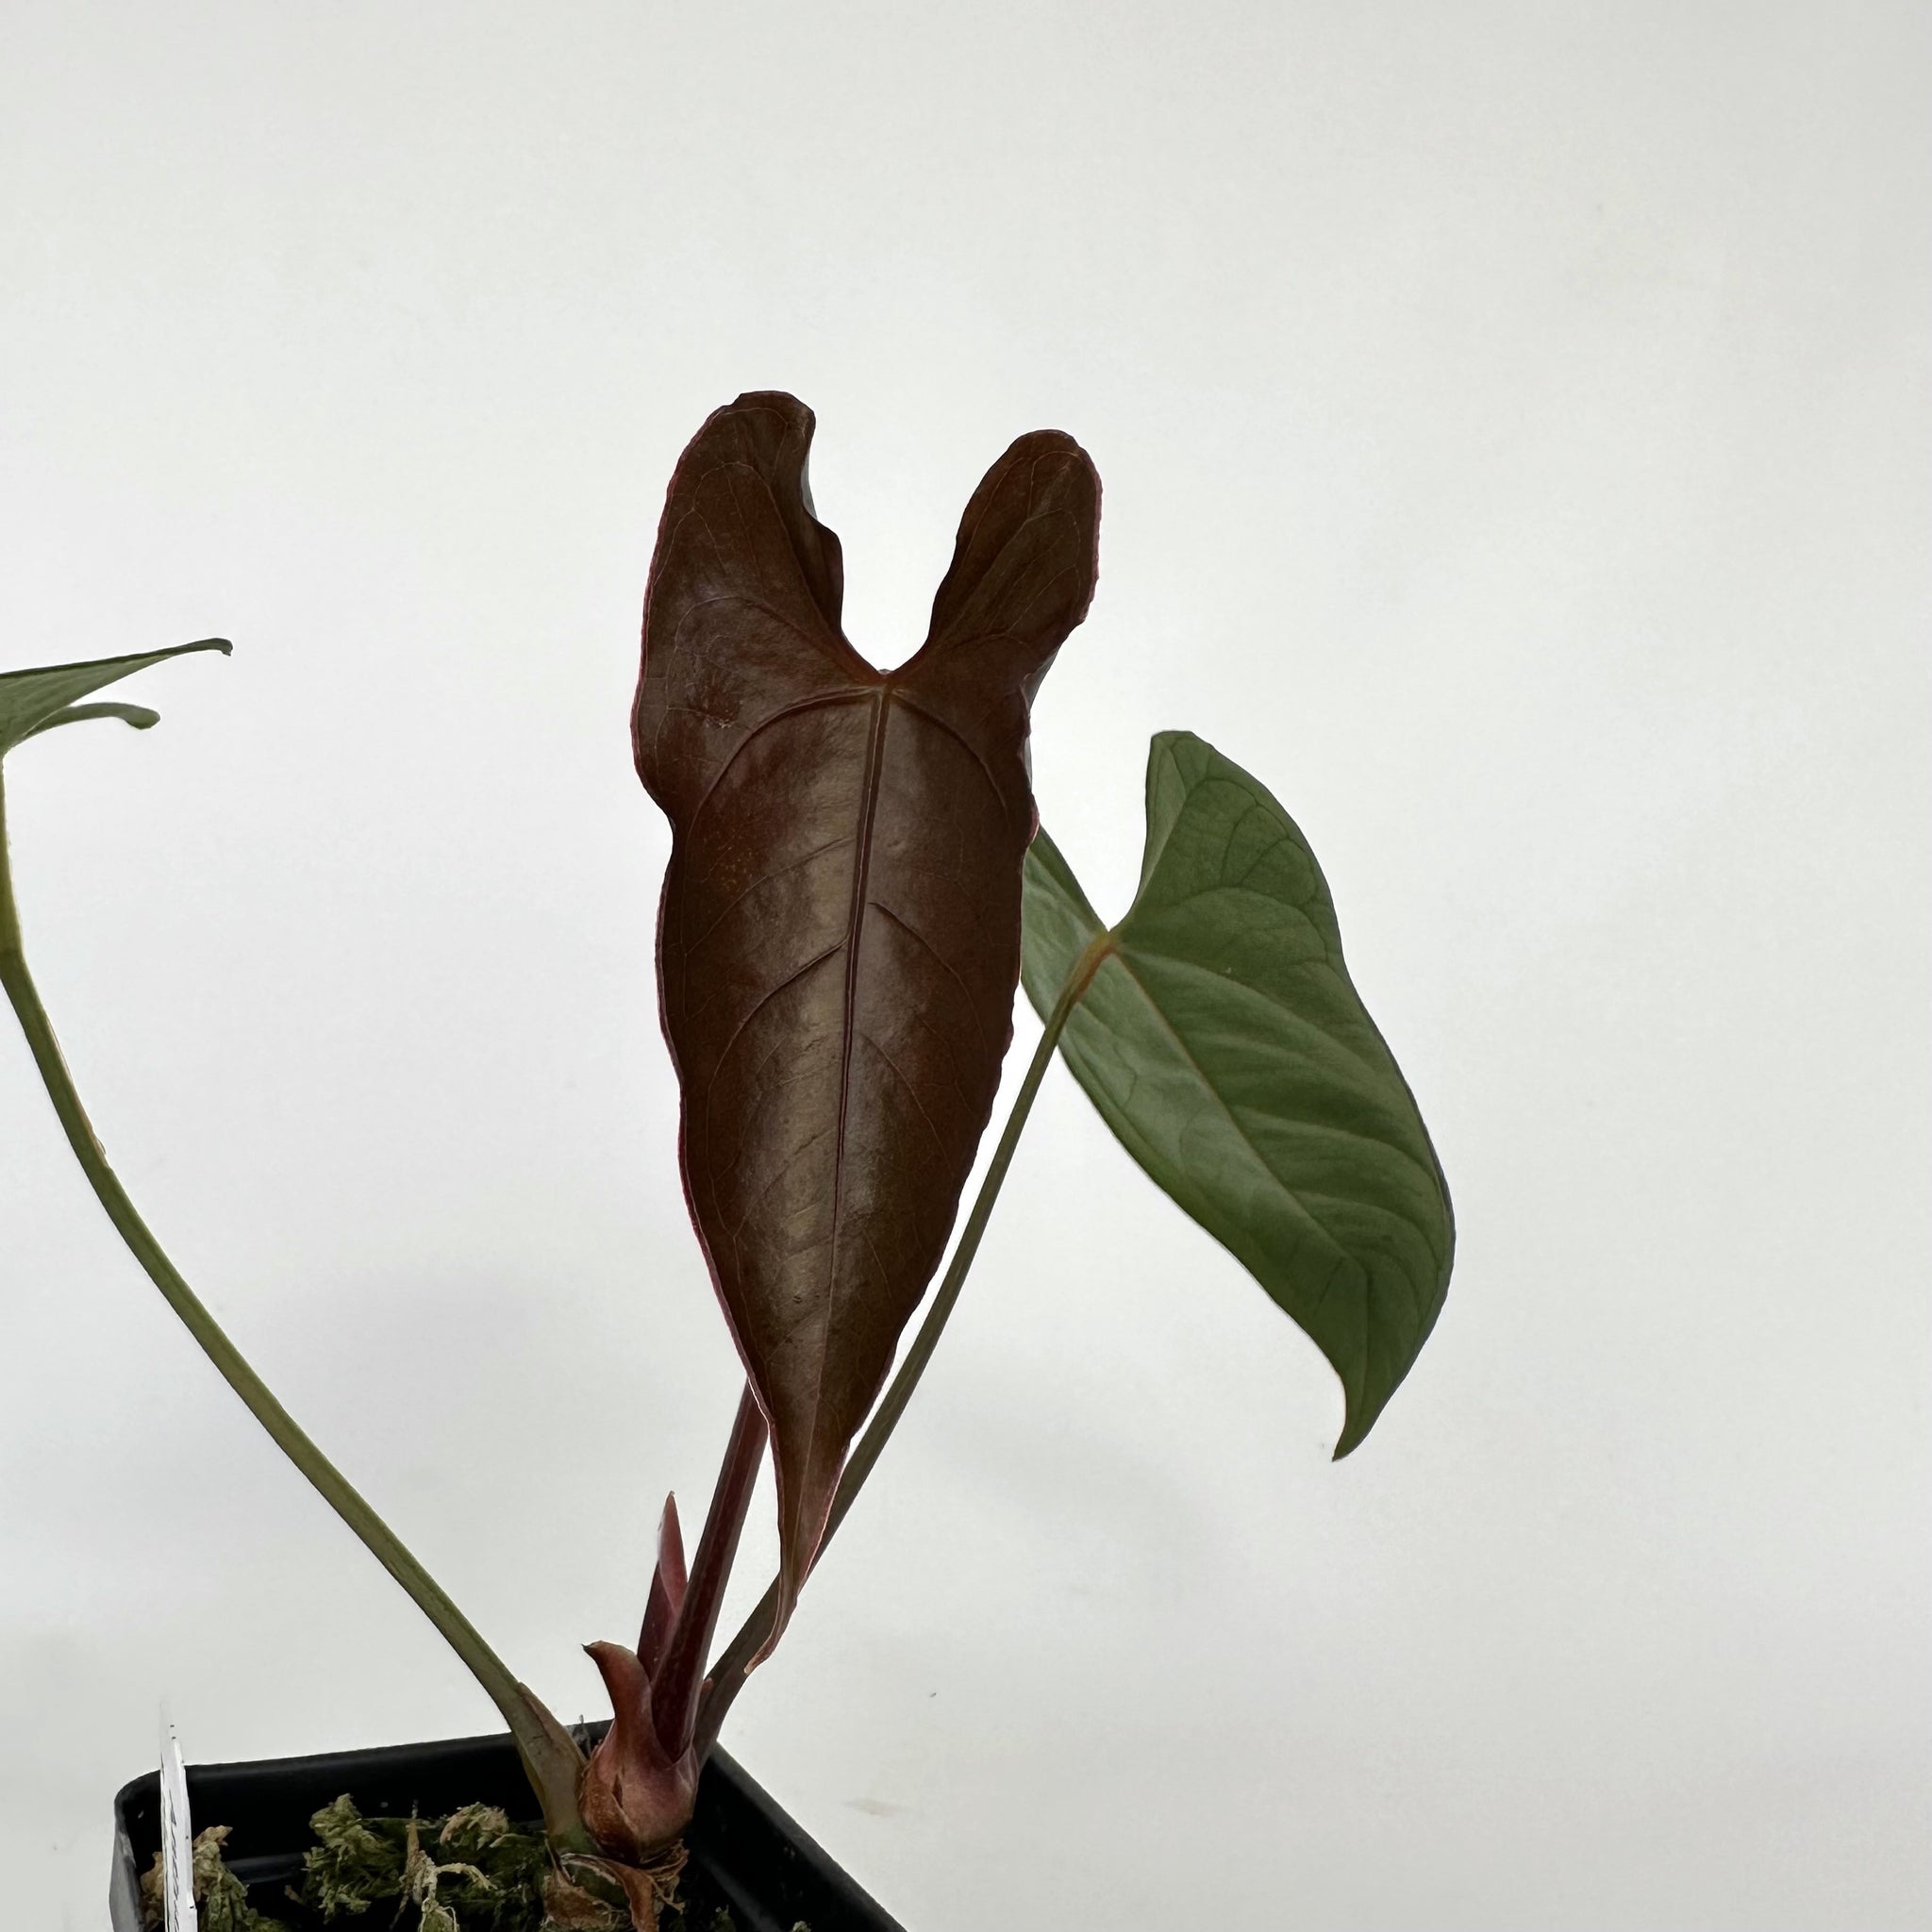 Anthurium magnificum/forgetii x nigrolaminum 'Gigi'